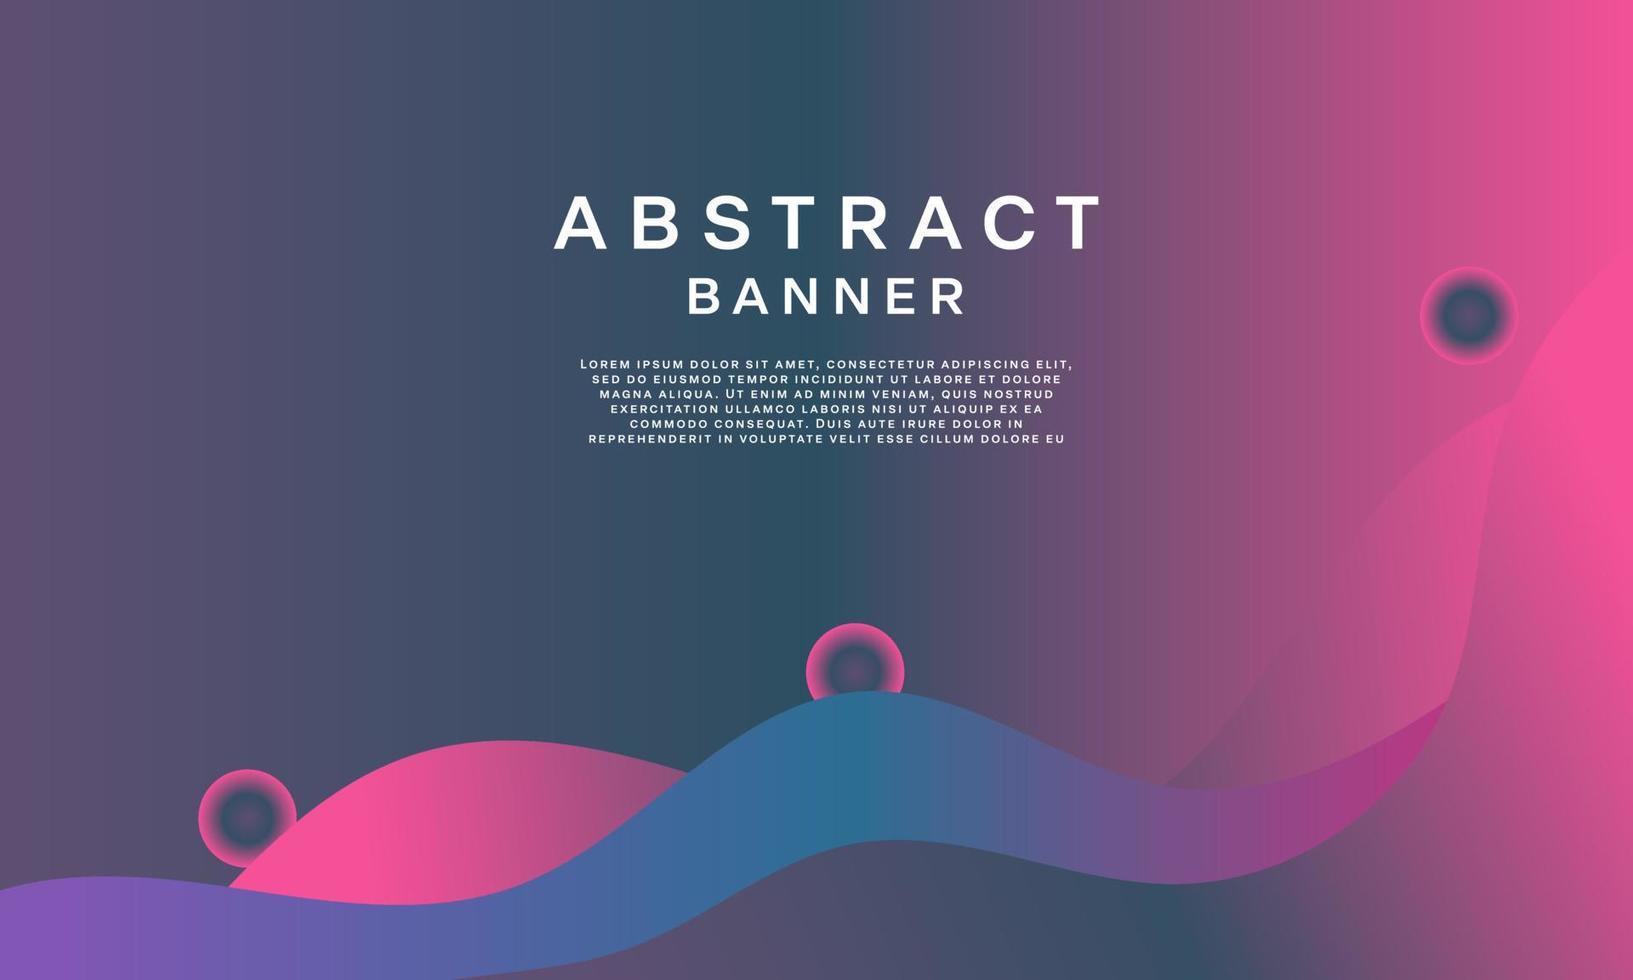 plantilla de banner fluido abstracto banner de plantilla colorido con colores degradados. diseño con forma líquida. vector